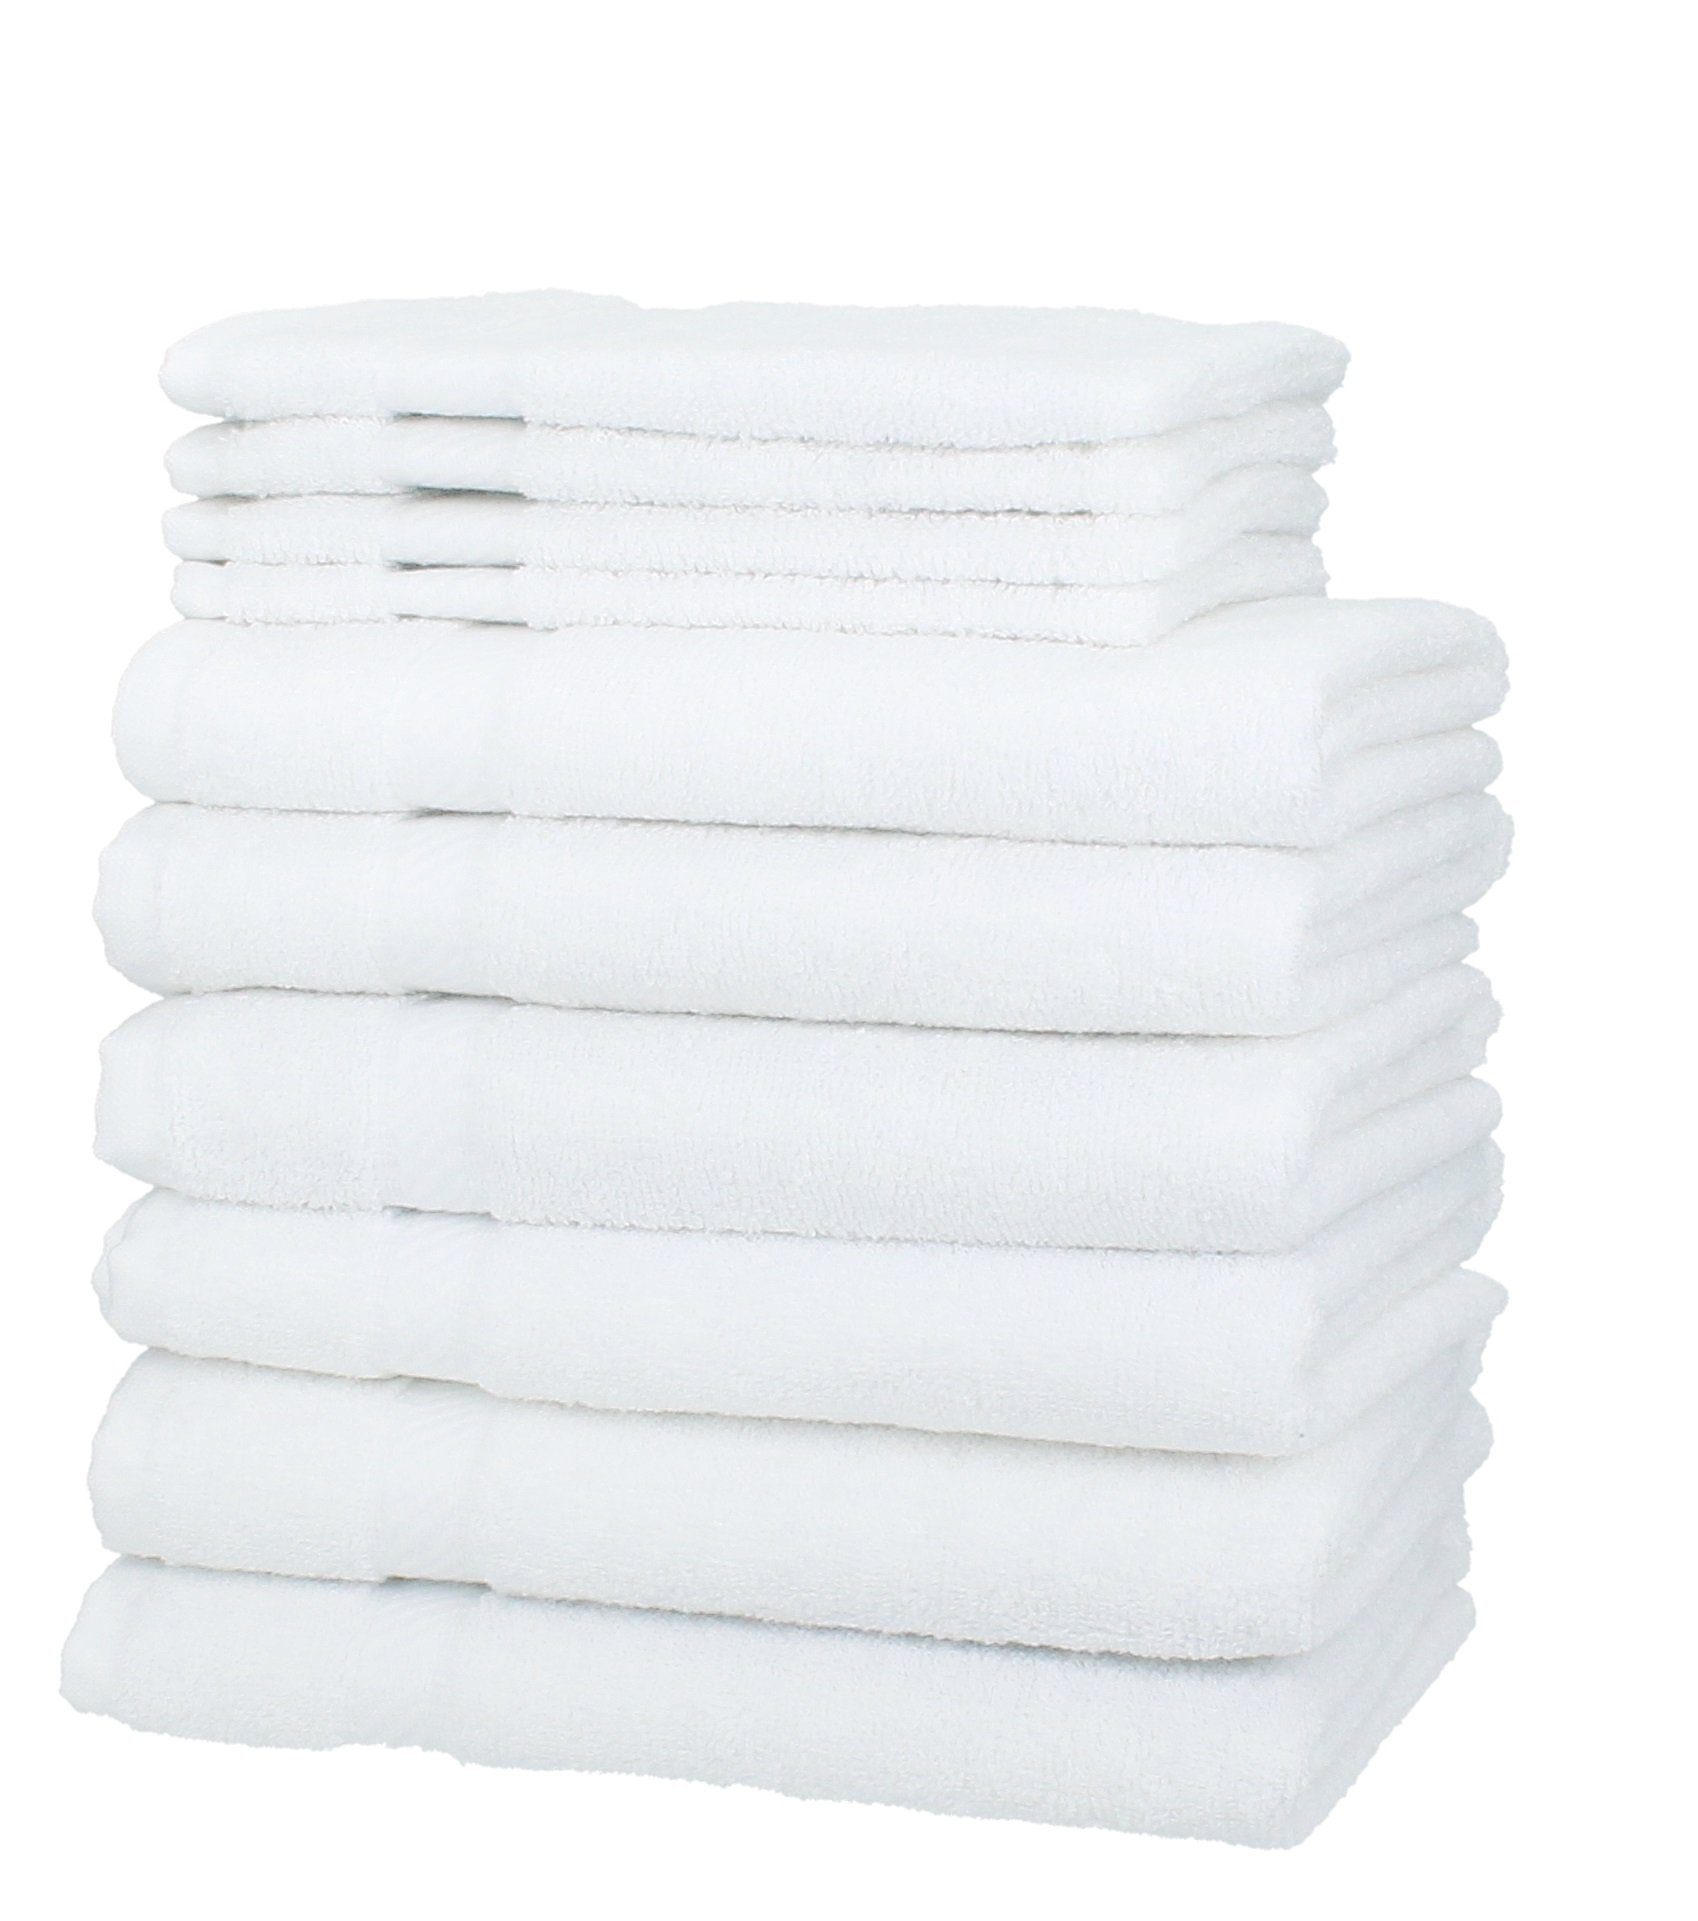 Betz Handtuch Set 10-TLG. Handtuch-Set Palermo Farbe weiß, 100% Baumwolle